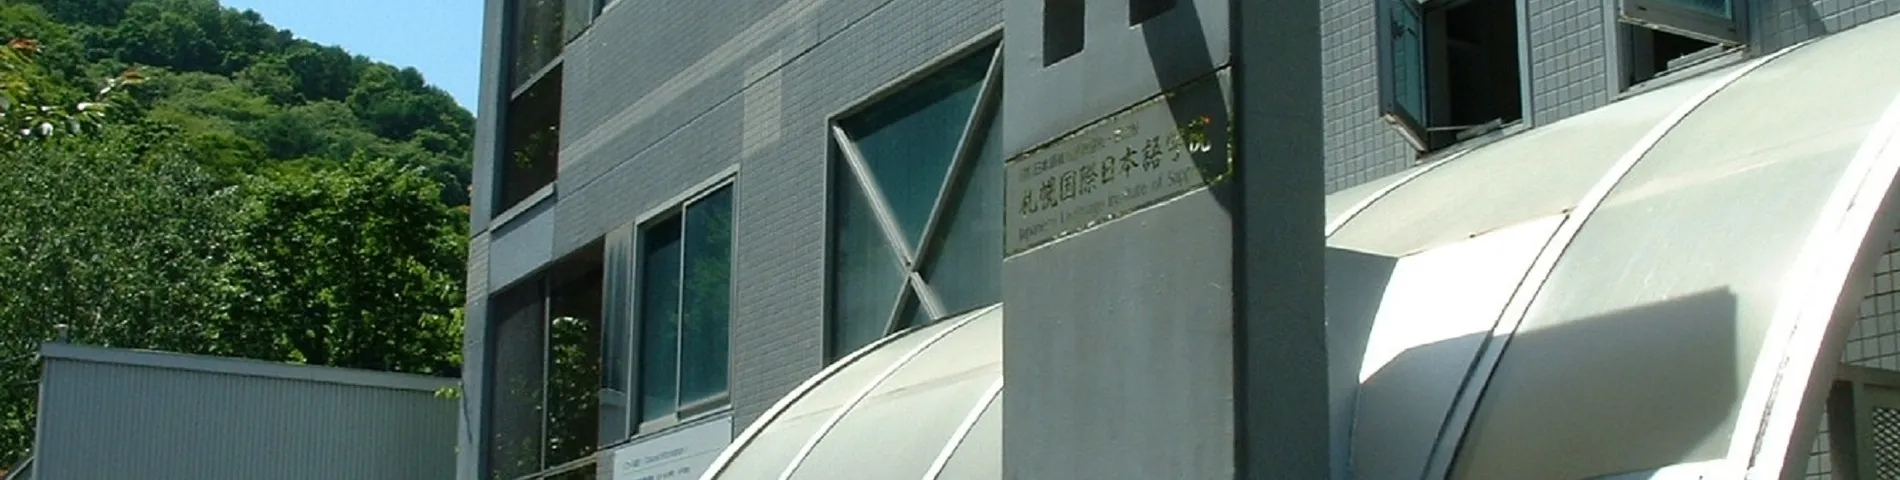 Japanese Language Institute of Sapporo画像1